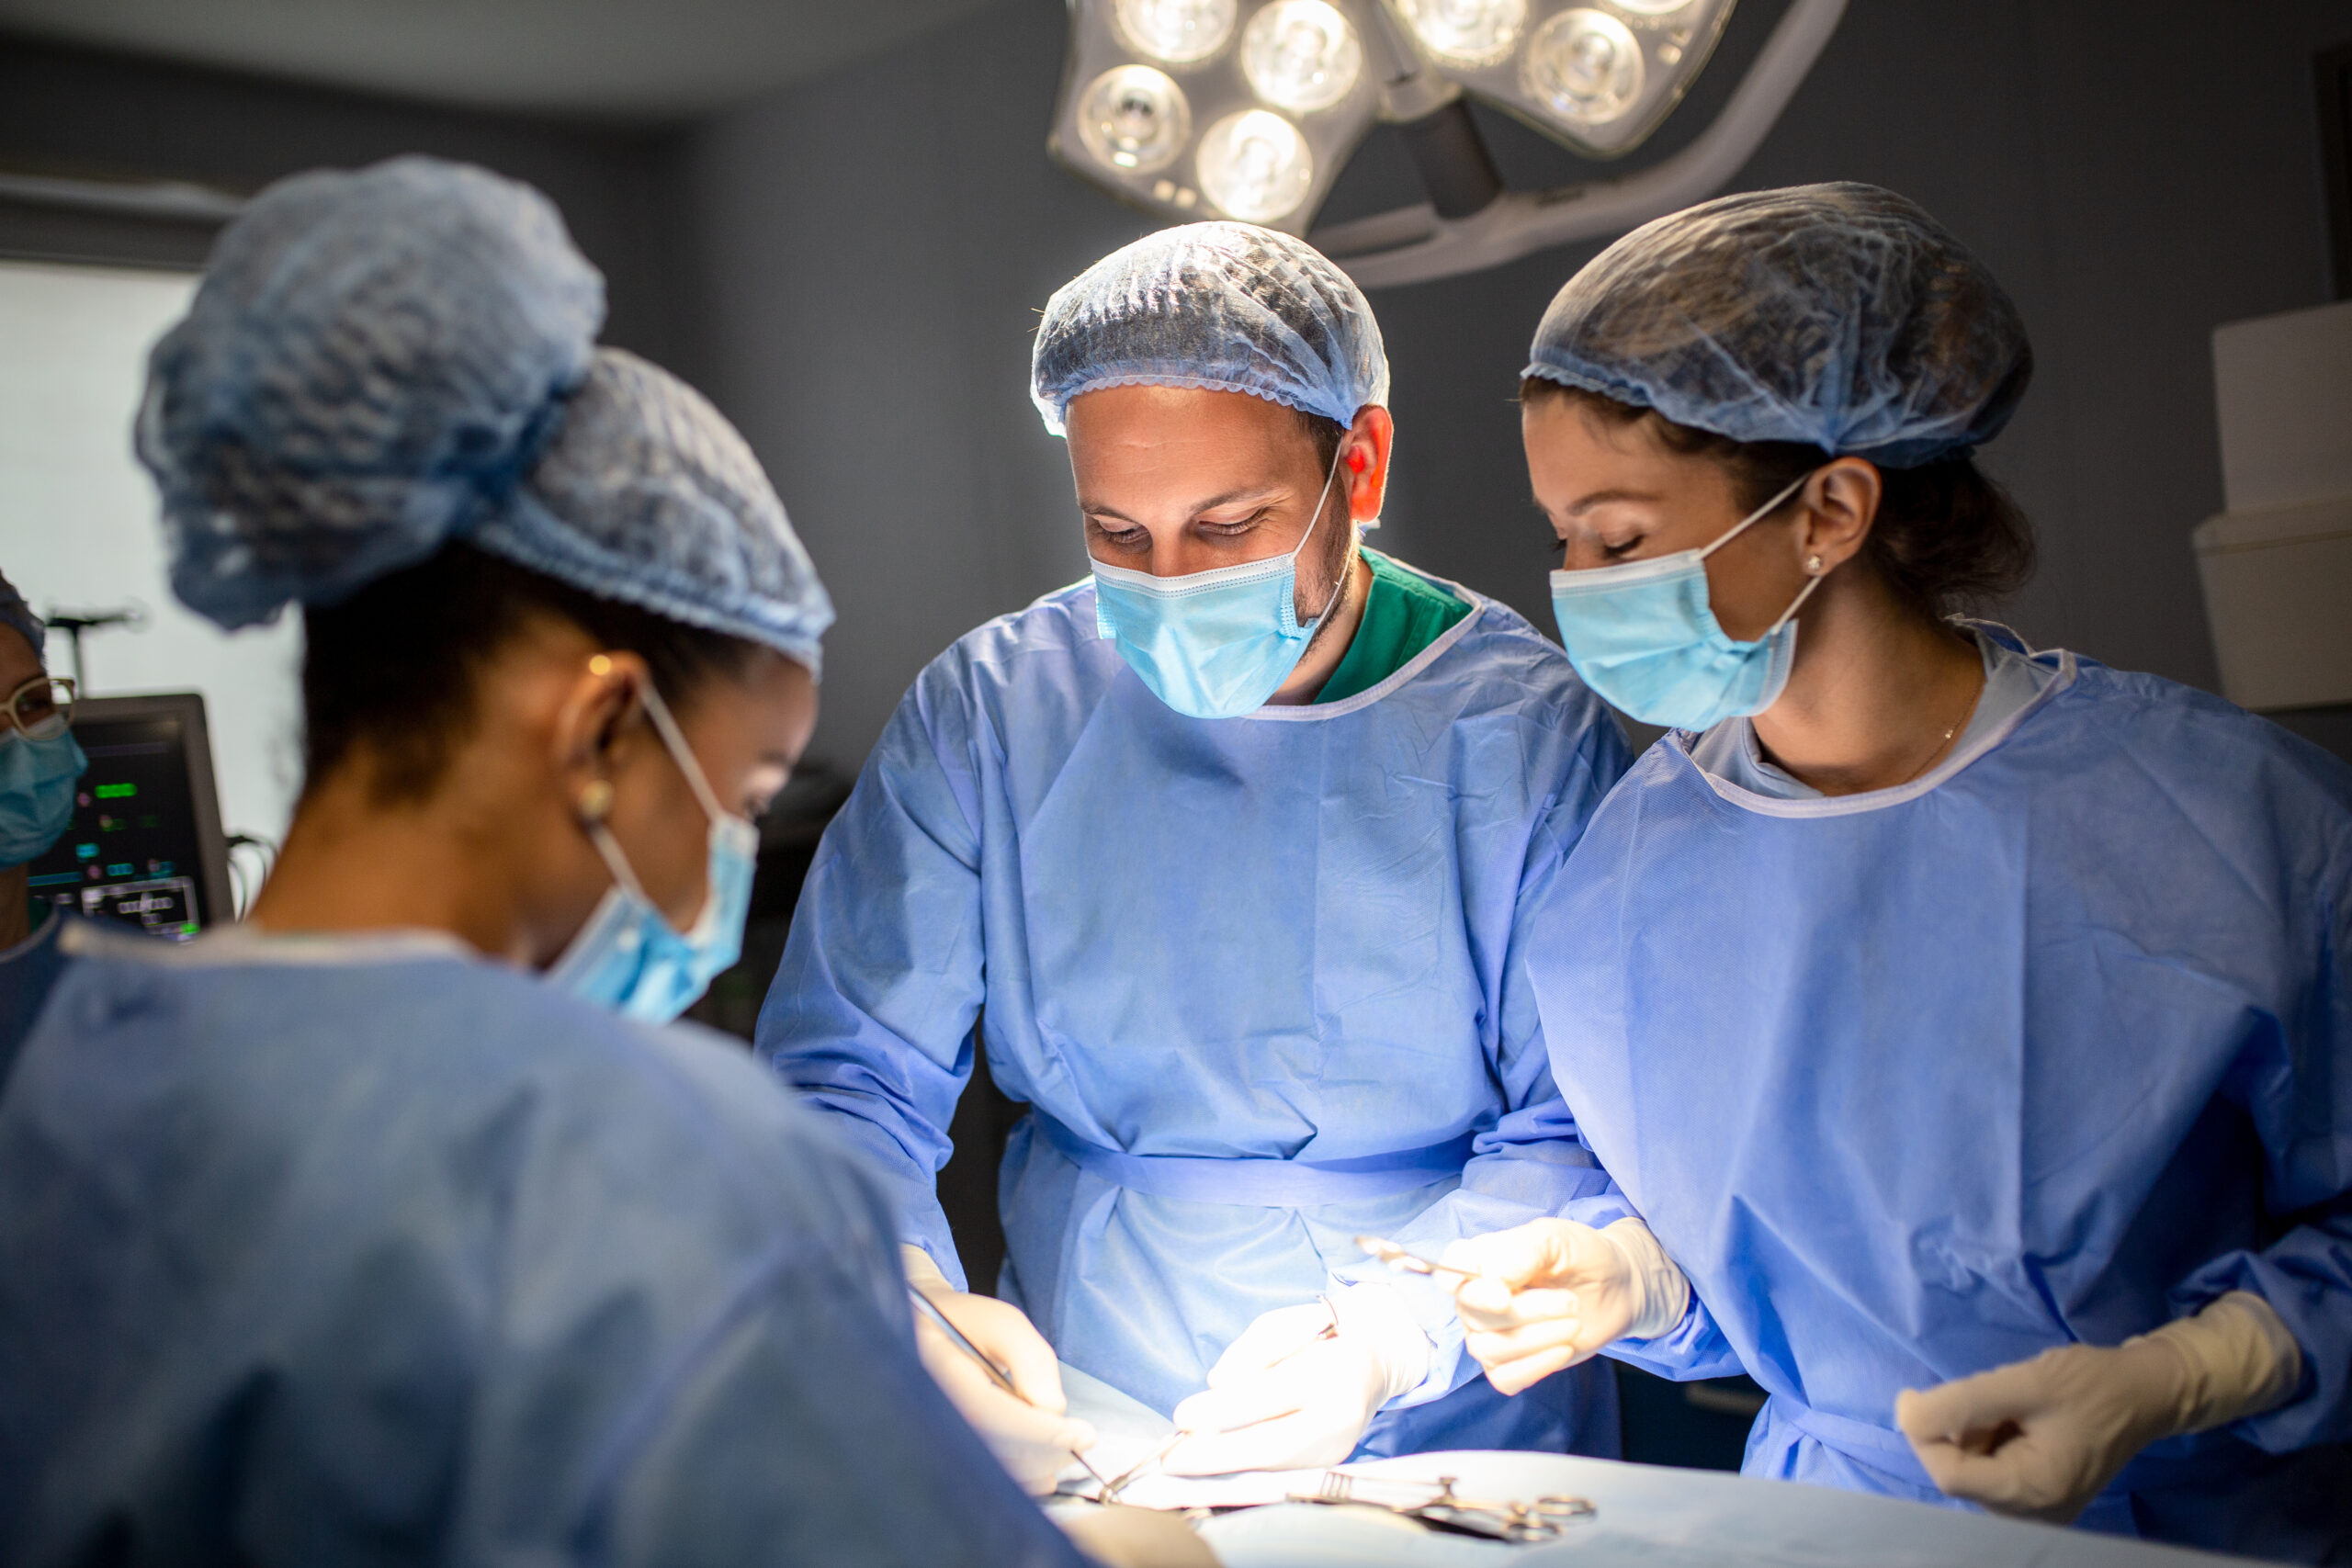 ΥΓΕΙΑ: Μπροστά στον τομέα εκπαίδευσης ιατρών στην ενδοσκοπική καρδιοχειρουργική